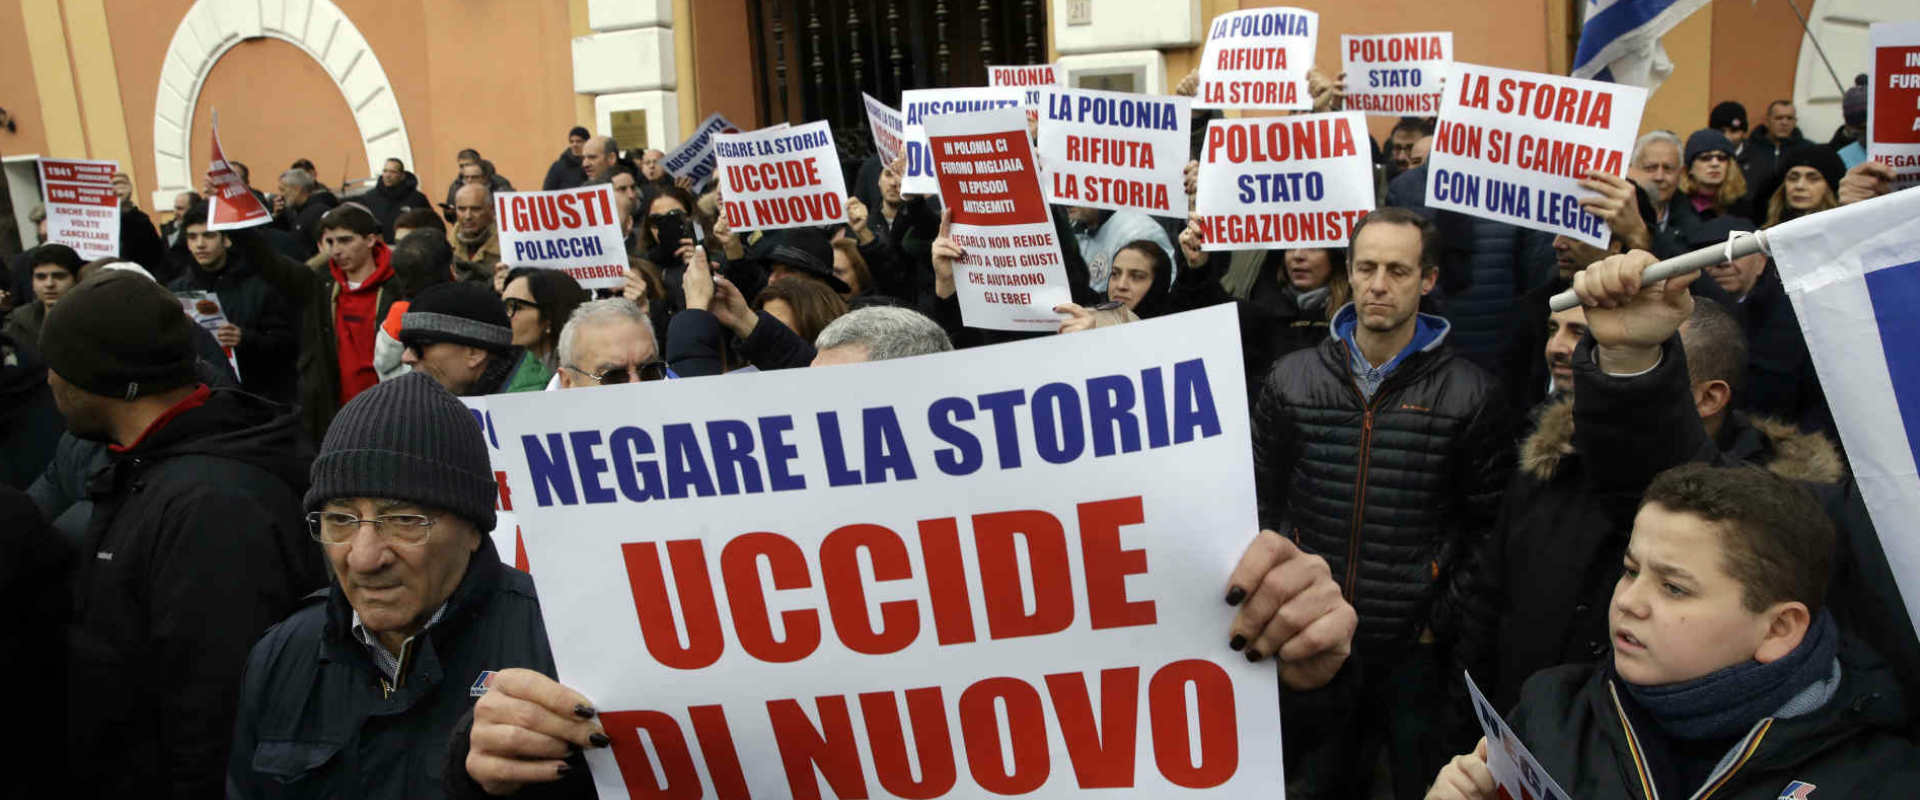 מחאה של הקהילה היהודית באיטליה נגד "חוק השואה" הפו